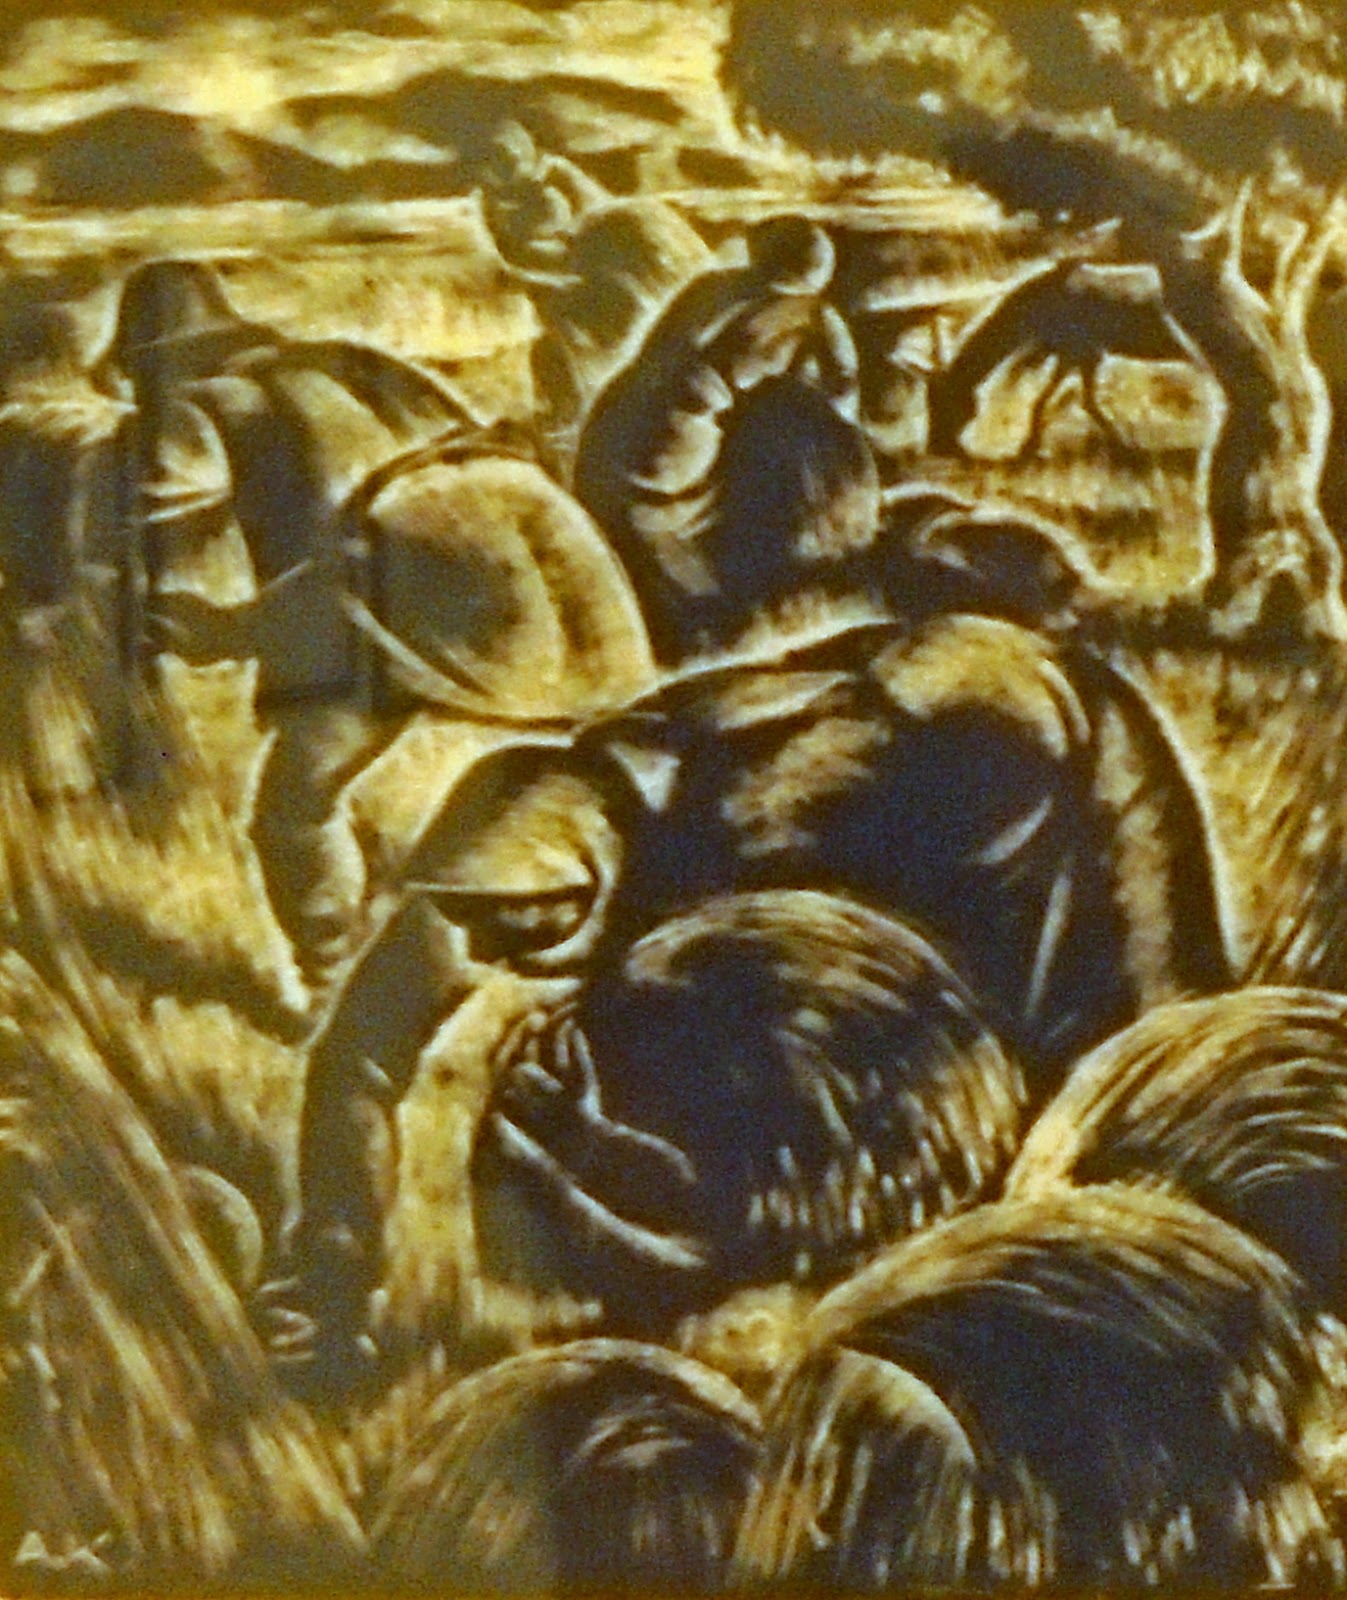 το έργο Το Θέρος του Κορογιαννάκη Αλέξανδρουστη Πινακοθήκη Ευάγγελος Αβέρωφ του Μετσόβου